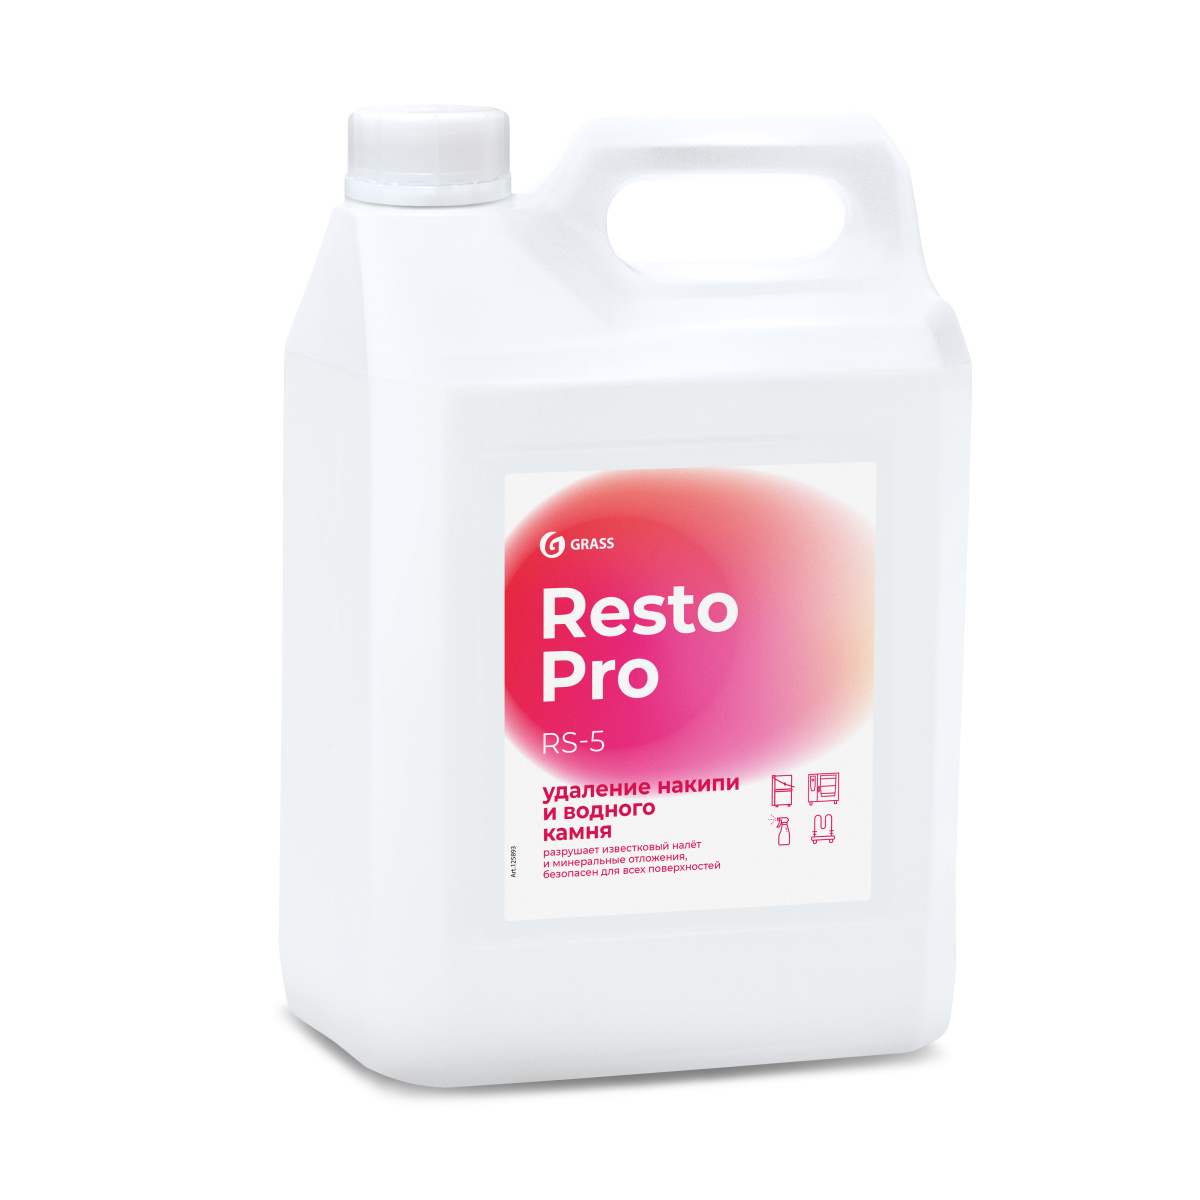 Resto Pro RS-5 Средство для удаления накипи и водного камня 5 л